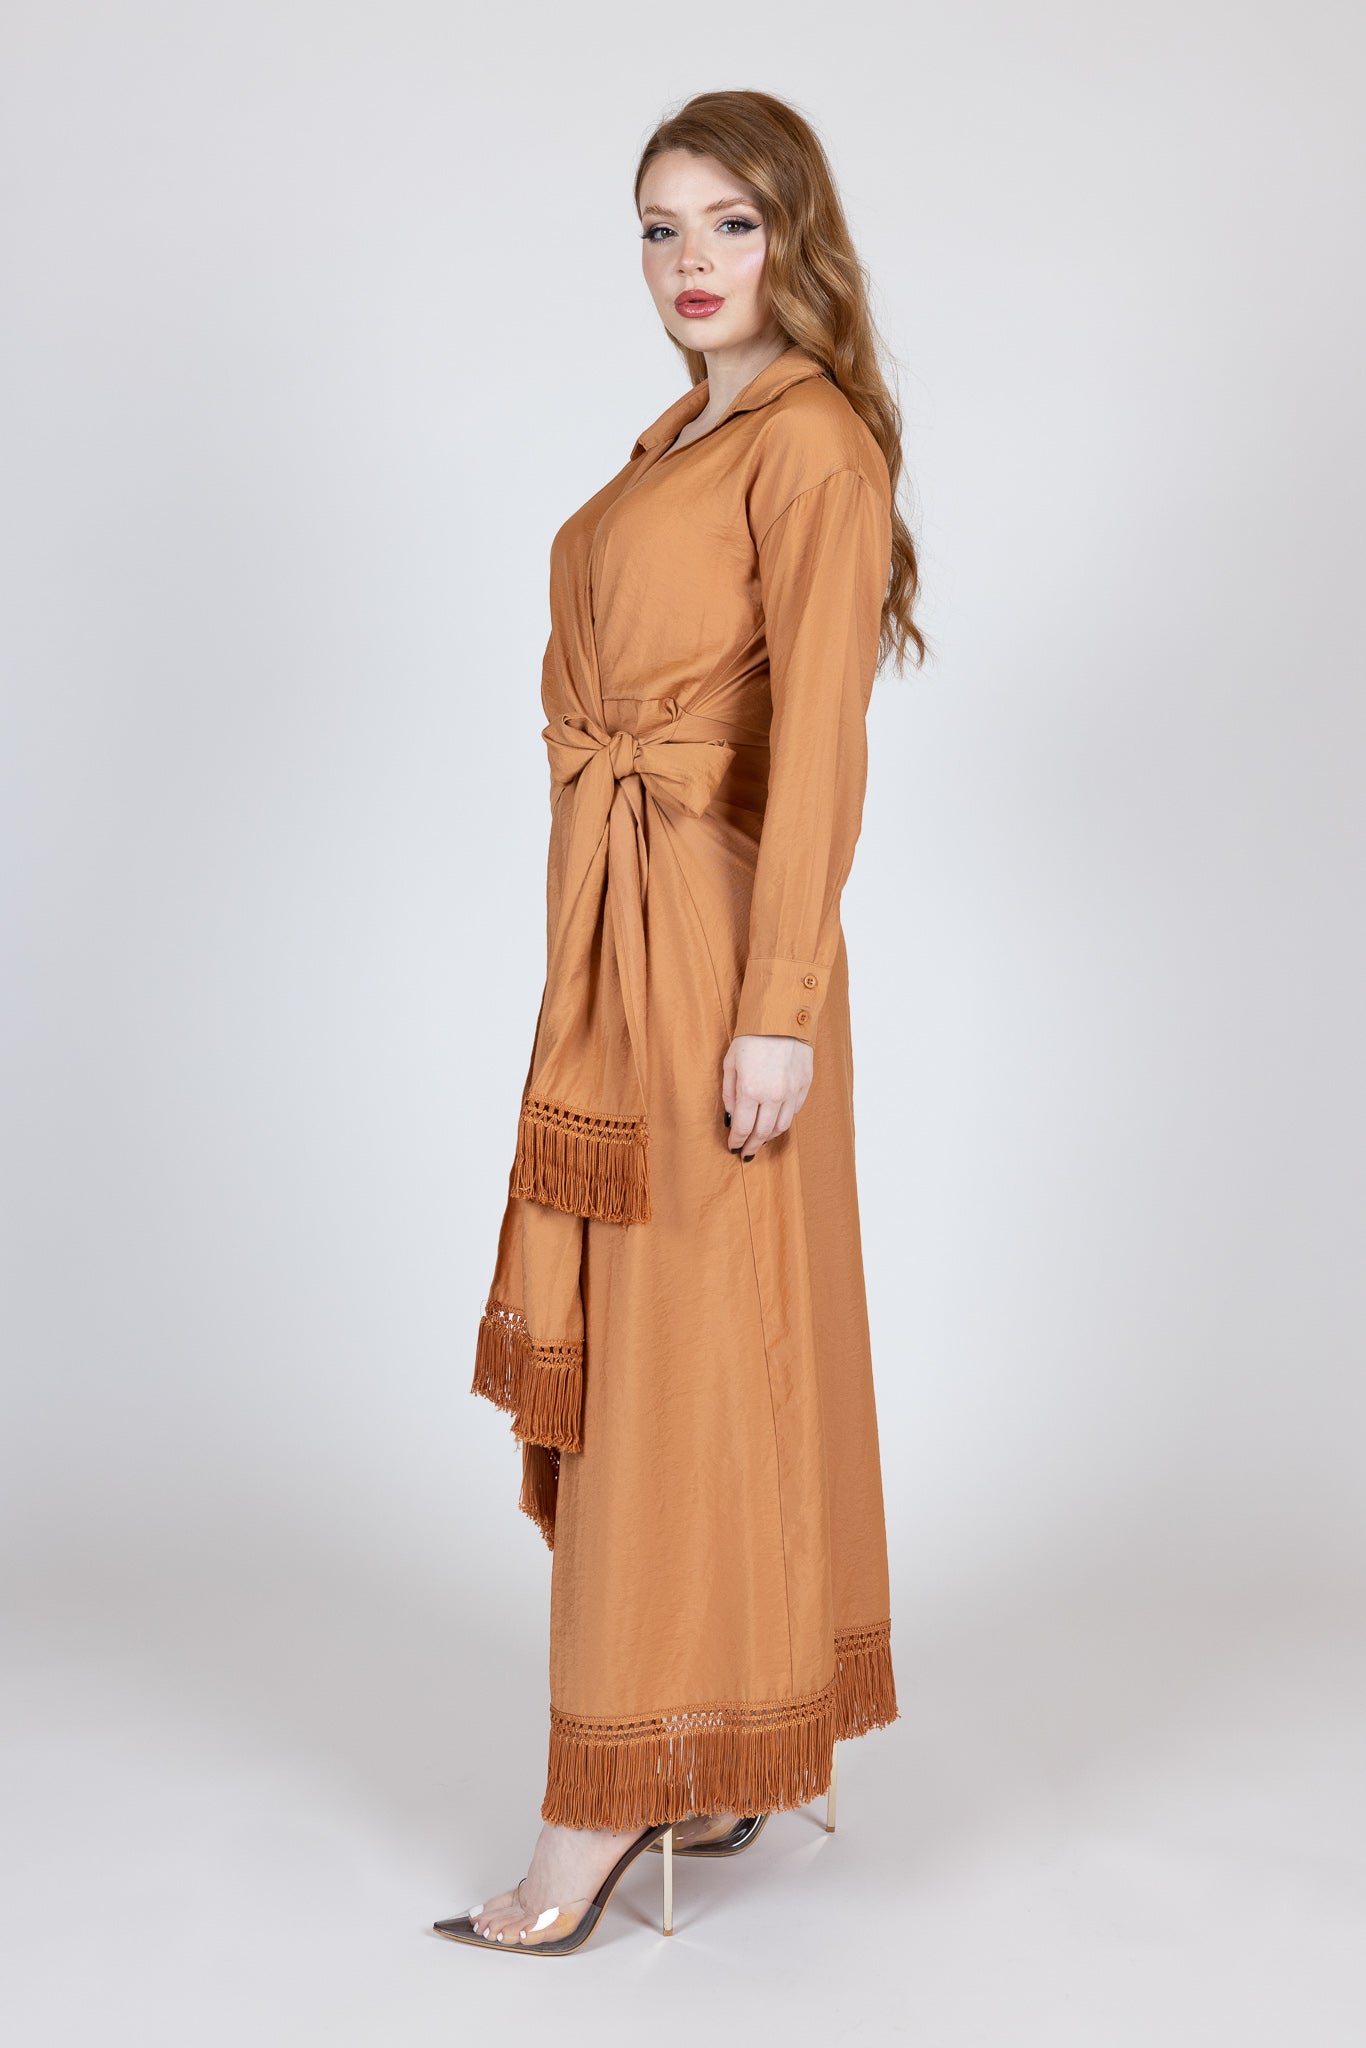 M00004Salmon-dress-abaya